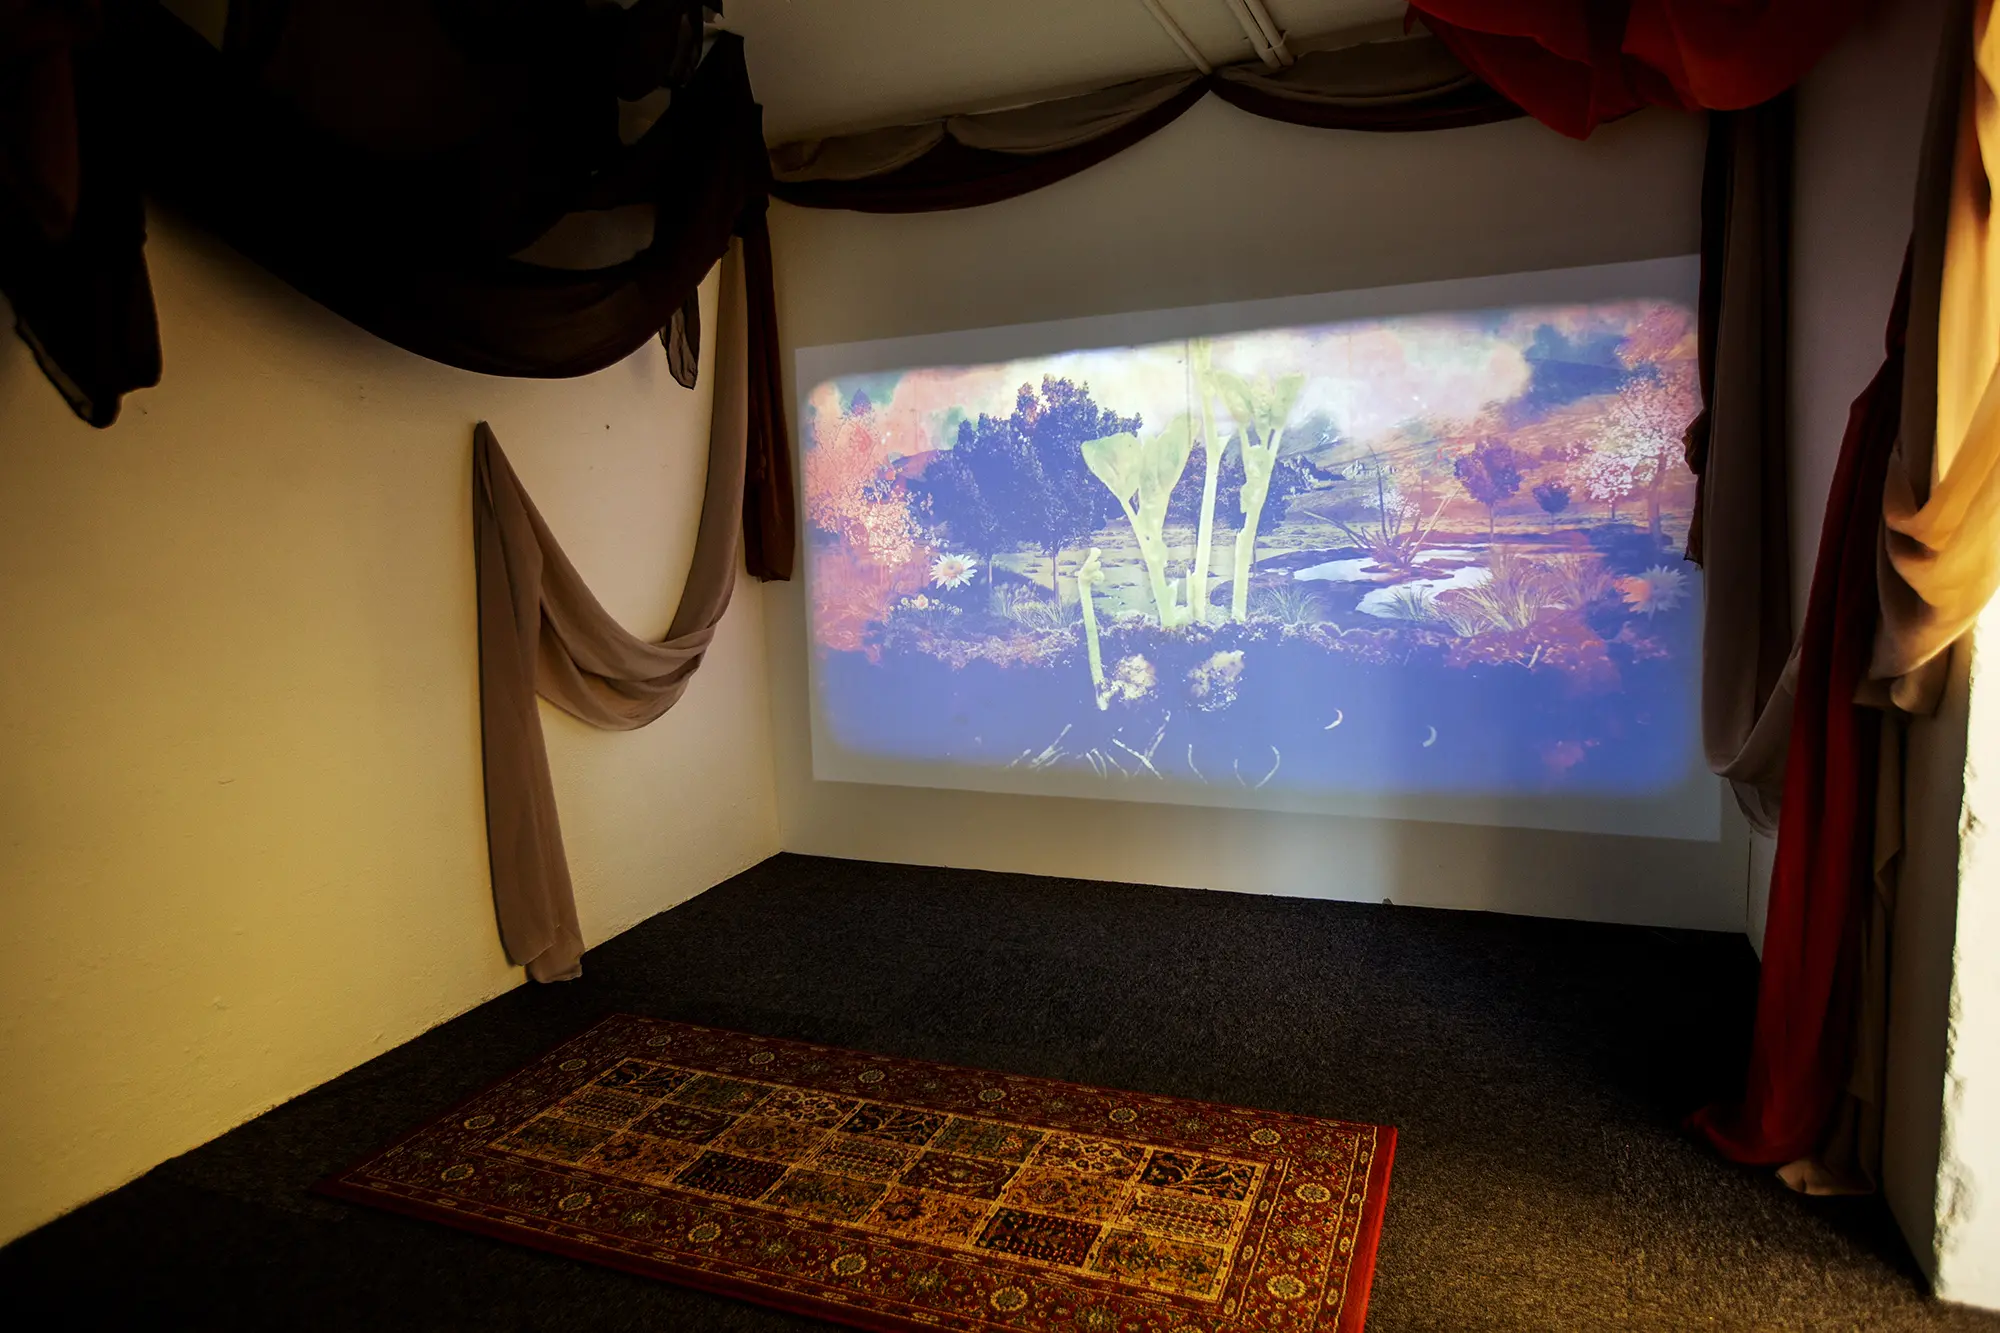 I ett mindre nedsläckt rum syns en filmprojektion på en av väggarna. På bilden visas ett kollage av ett fantasilandskap i dämpade färger. Runtom projektionen hänger tygstycken uppsatta på väggarna och från taket. Golvet är mörkt och på det ligger en orientalisk matta.